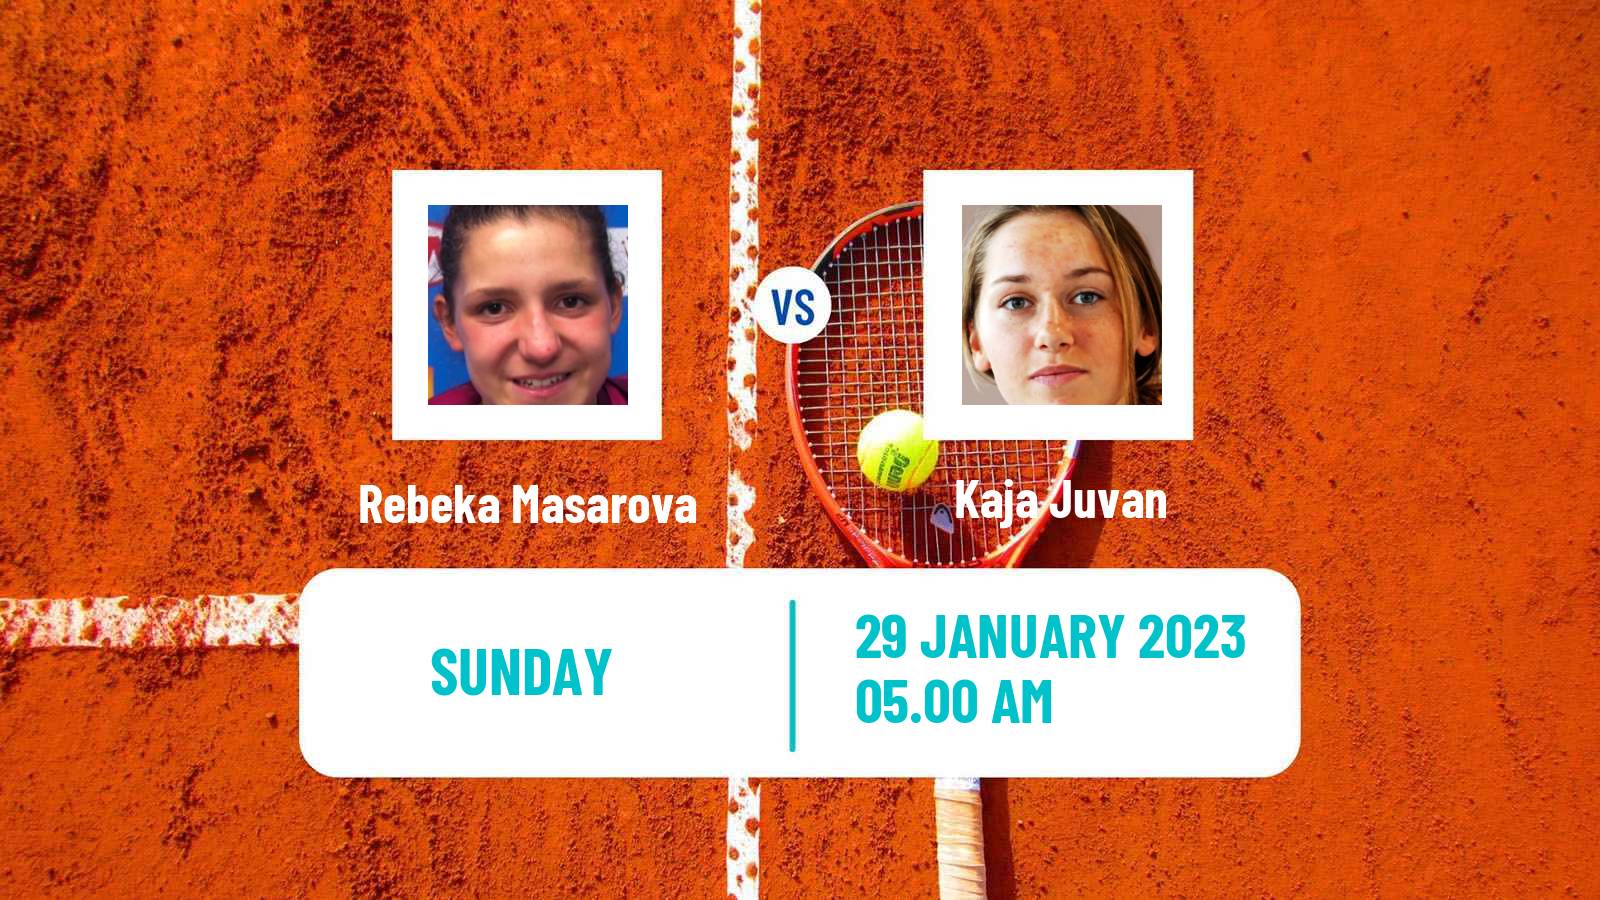 Tennis WTA Lyon Rebeka Masarova - Kaja Juvan